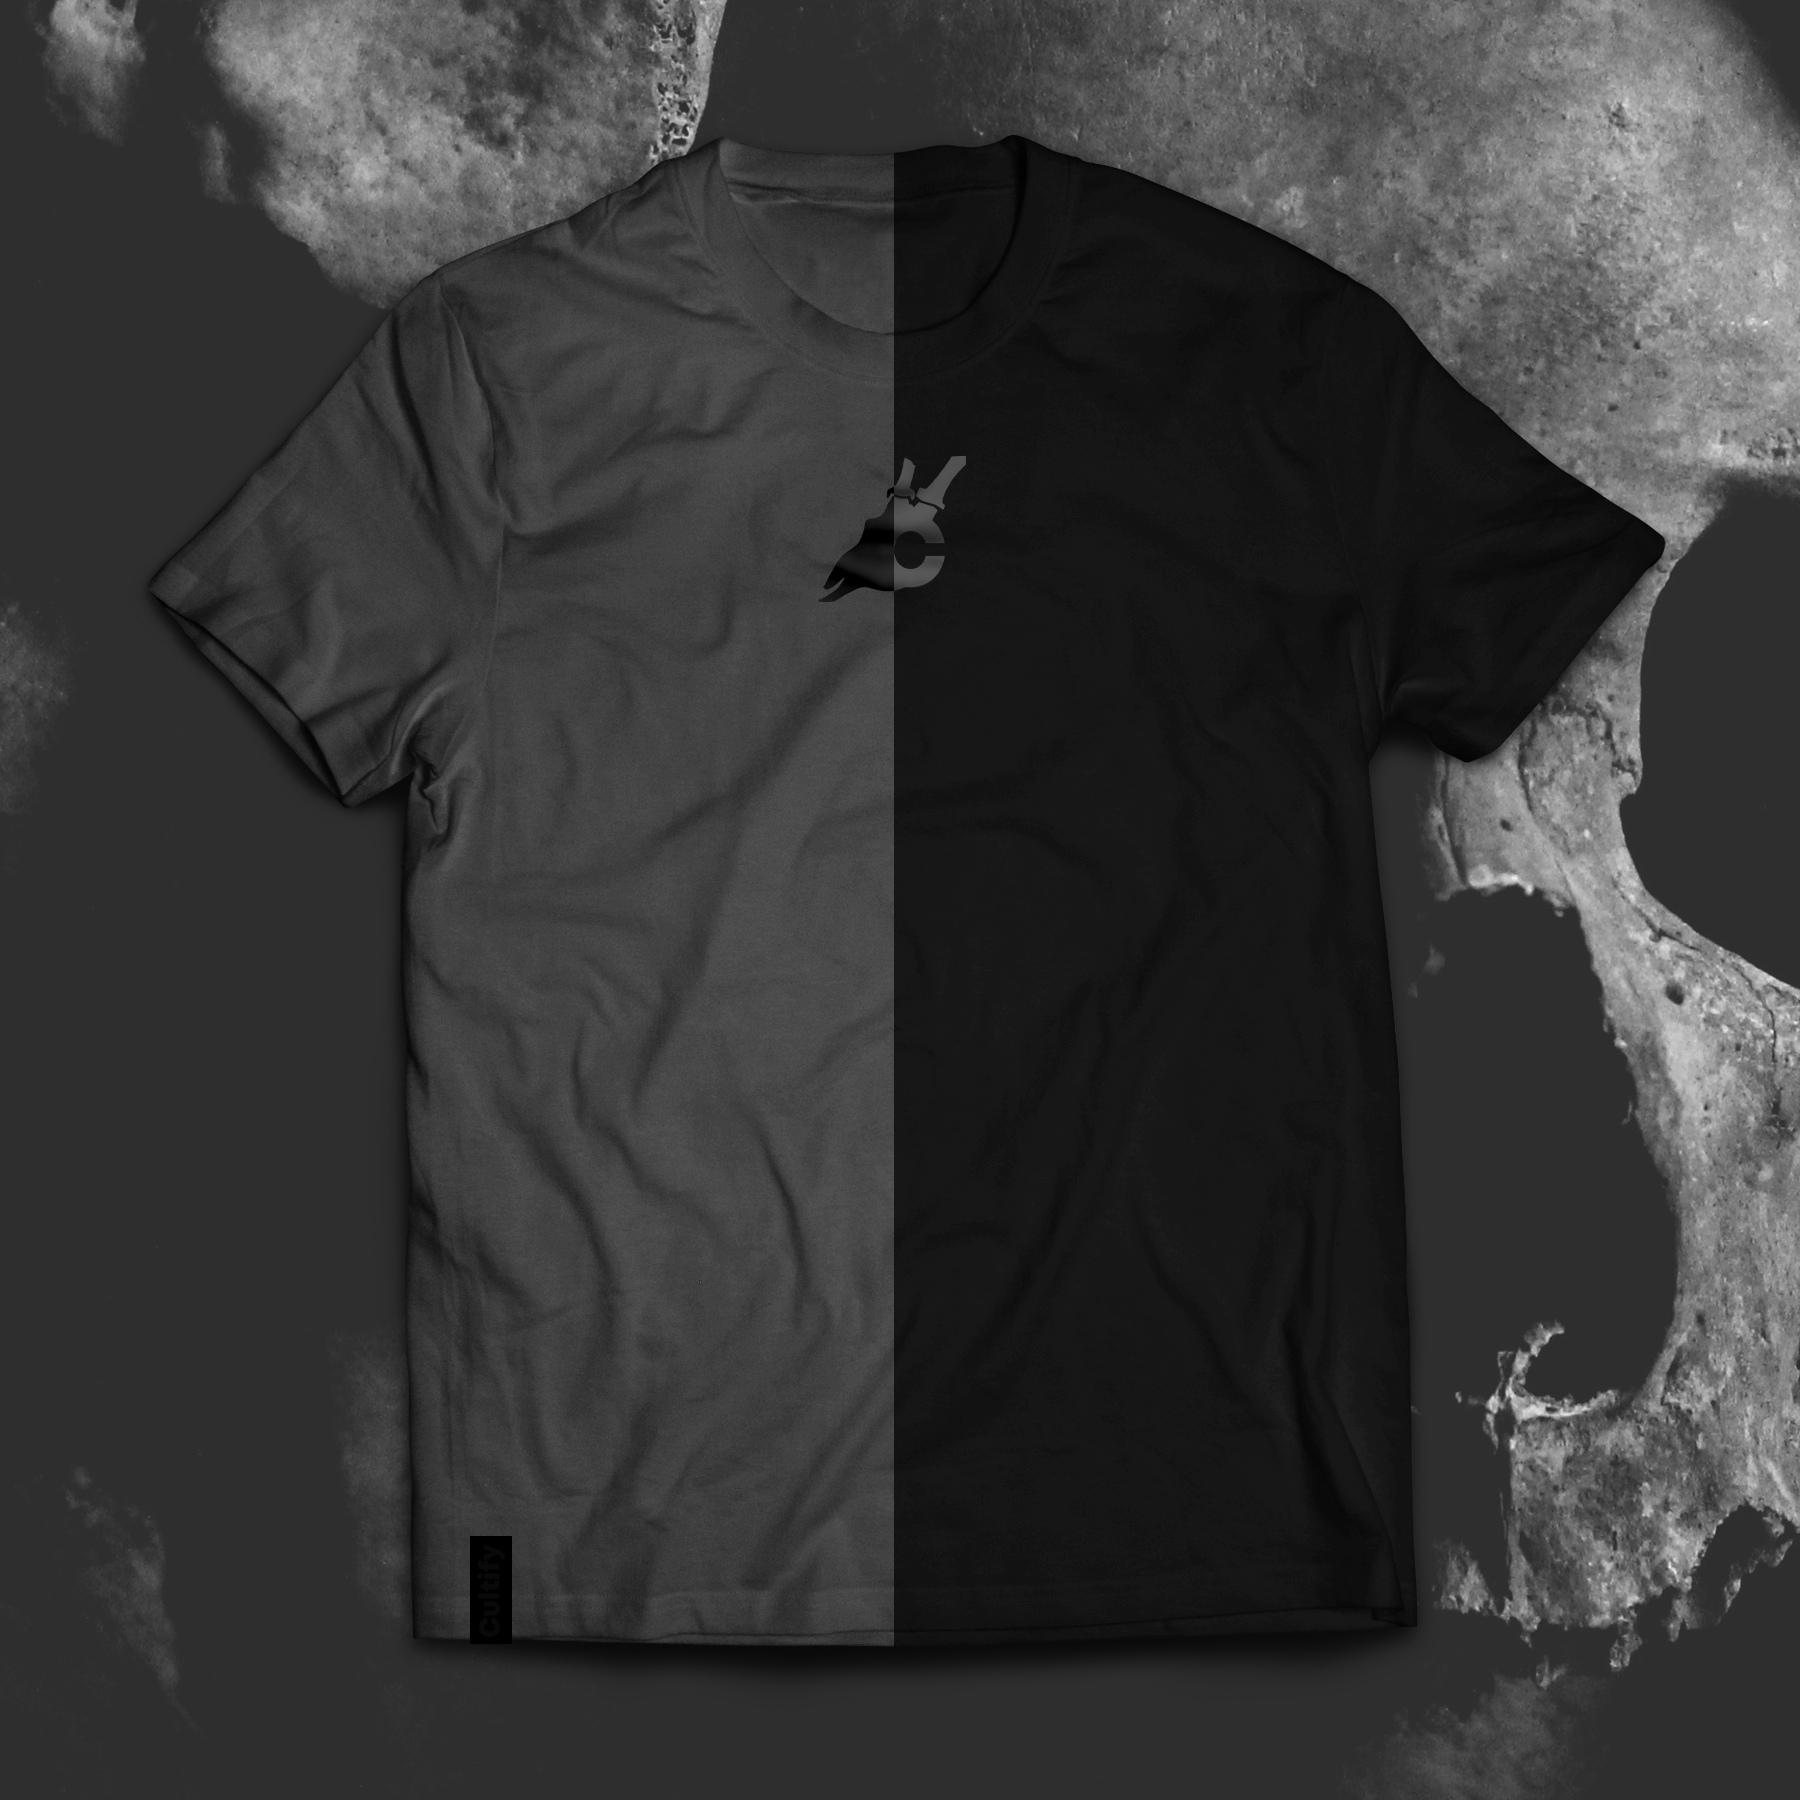 Cultify half grey half black t-shirt.